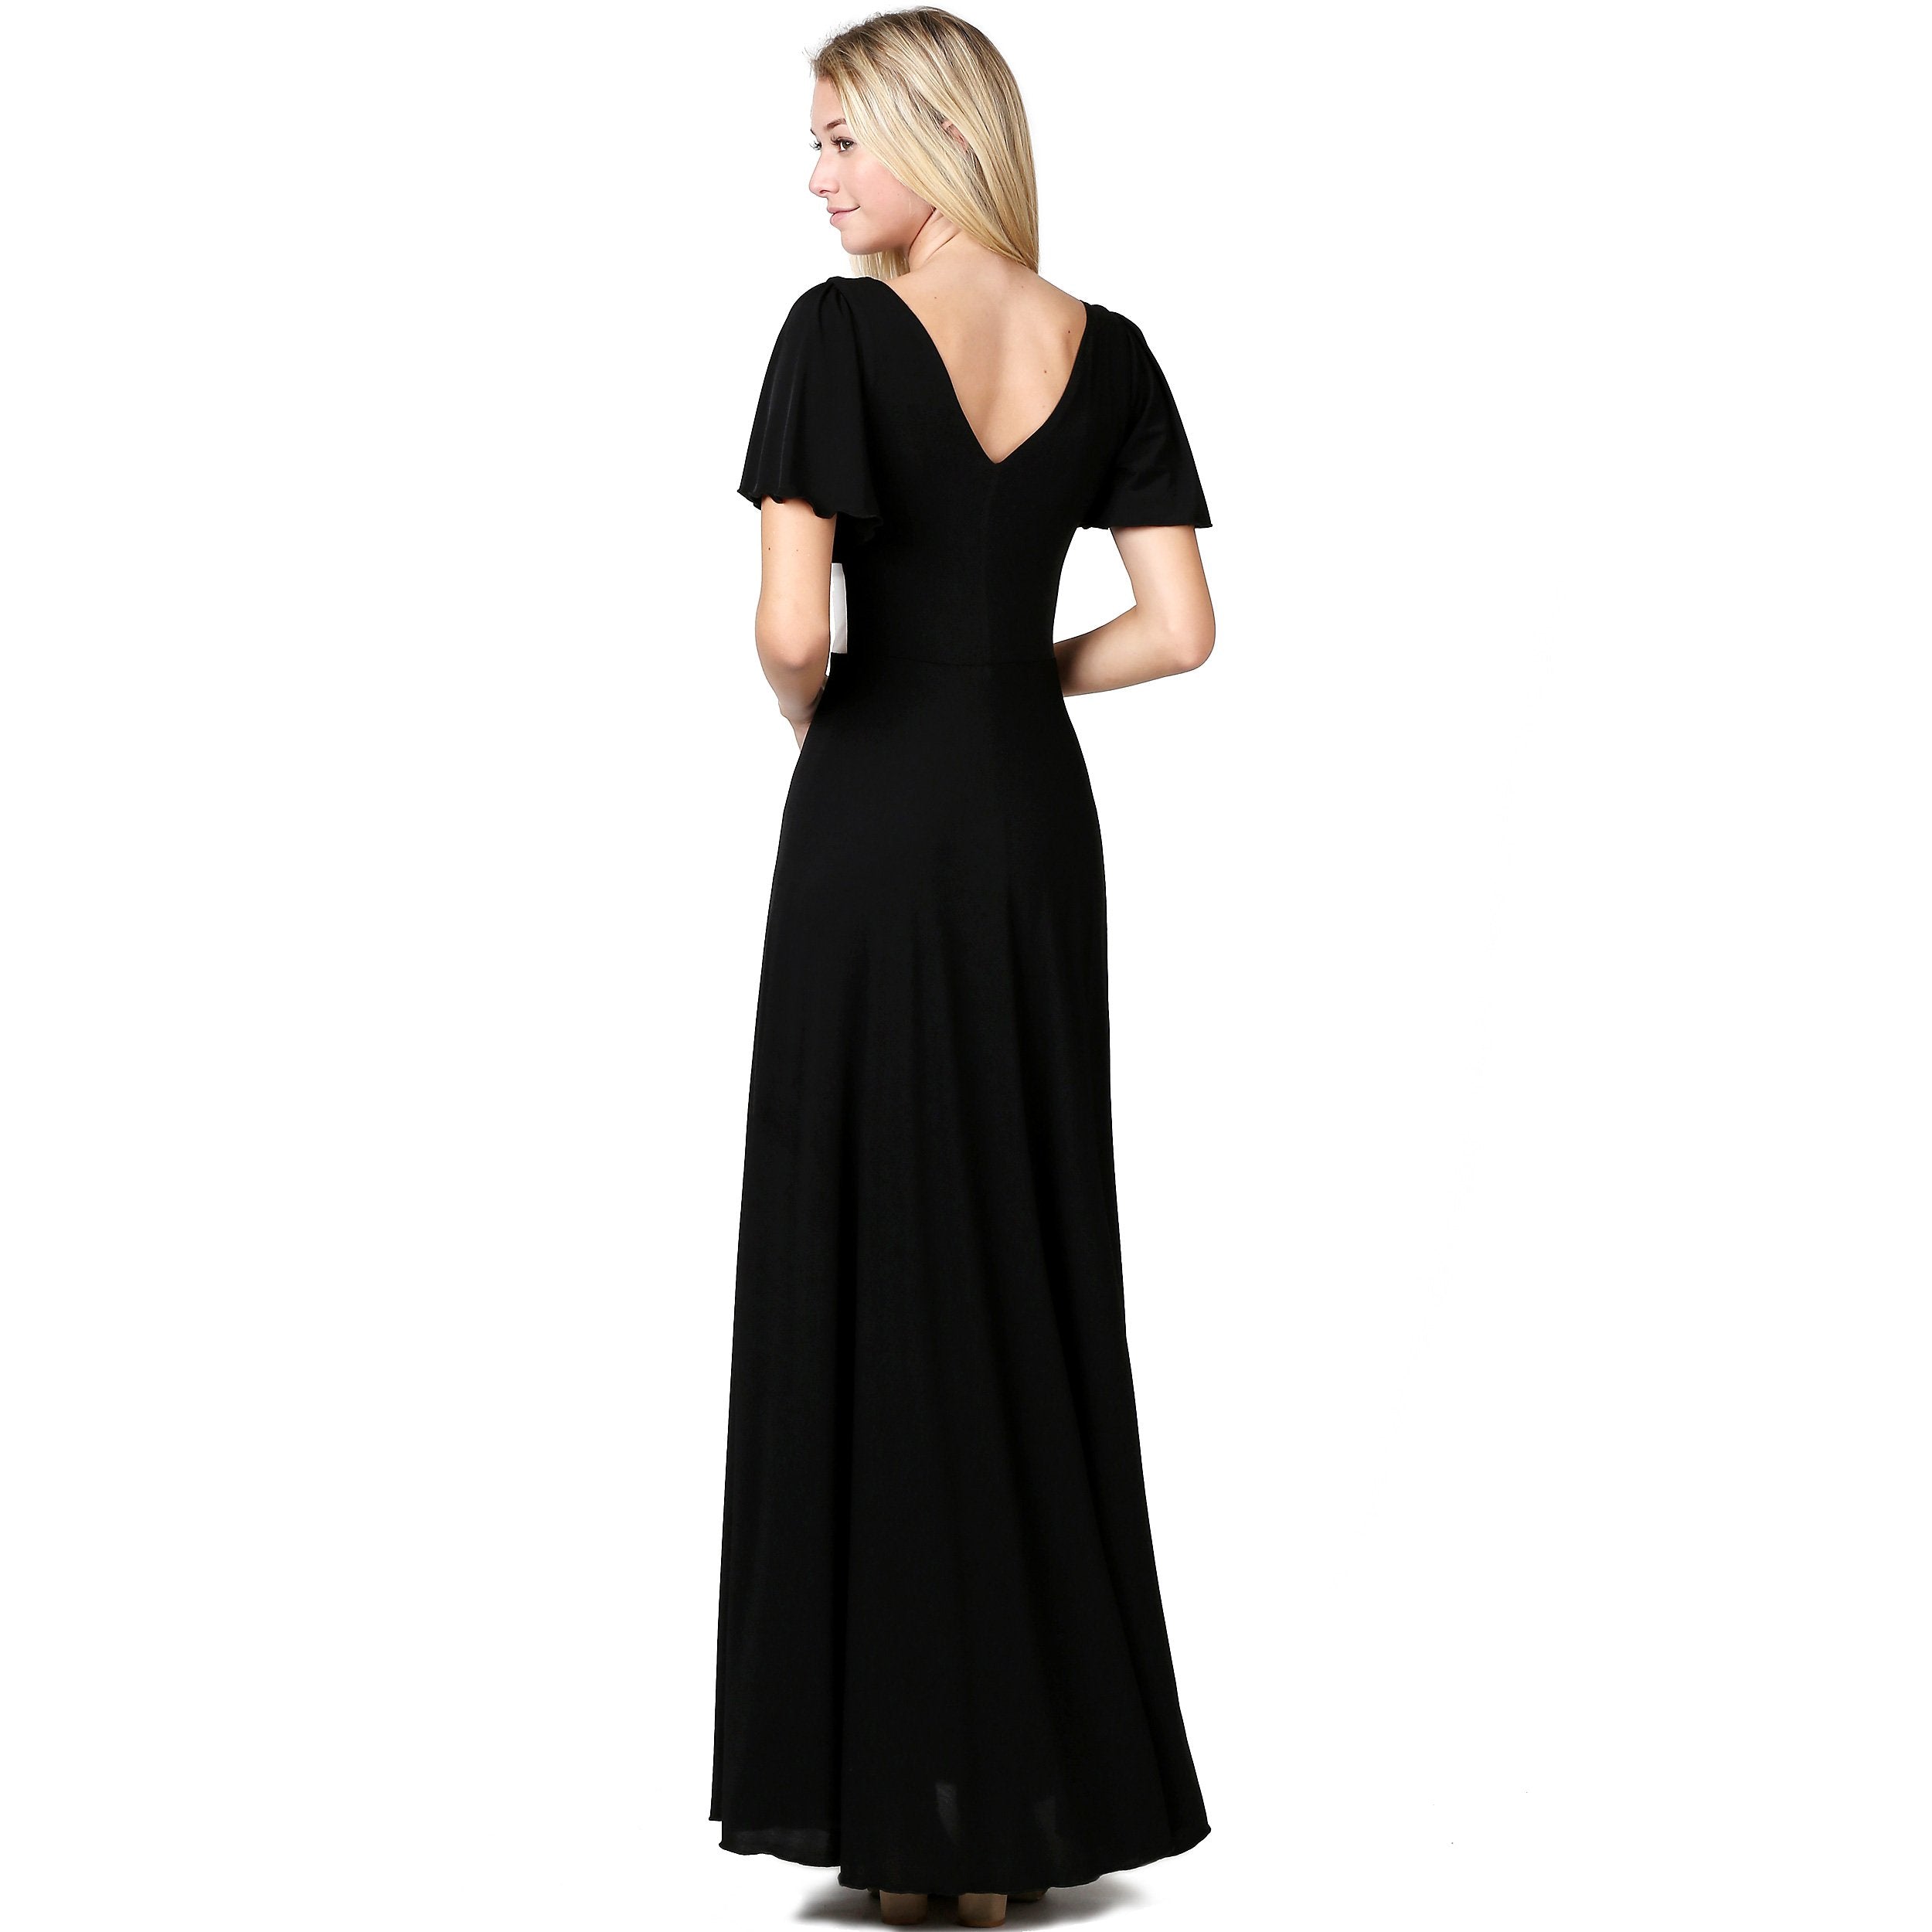 Elegant Slip on Short Sleeves Evening Dress